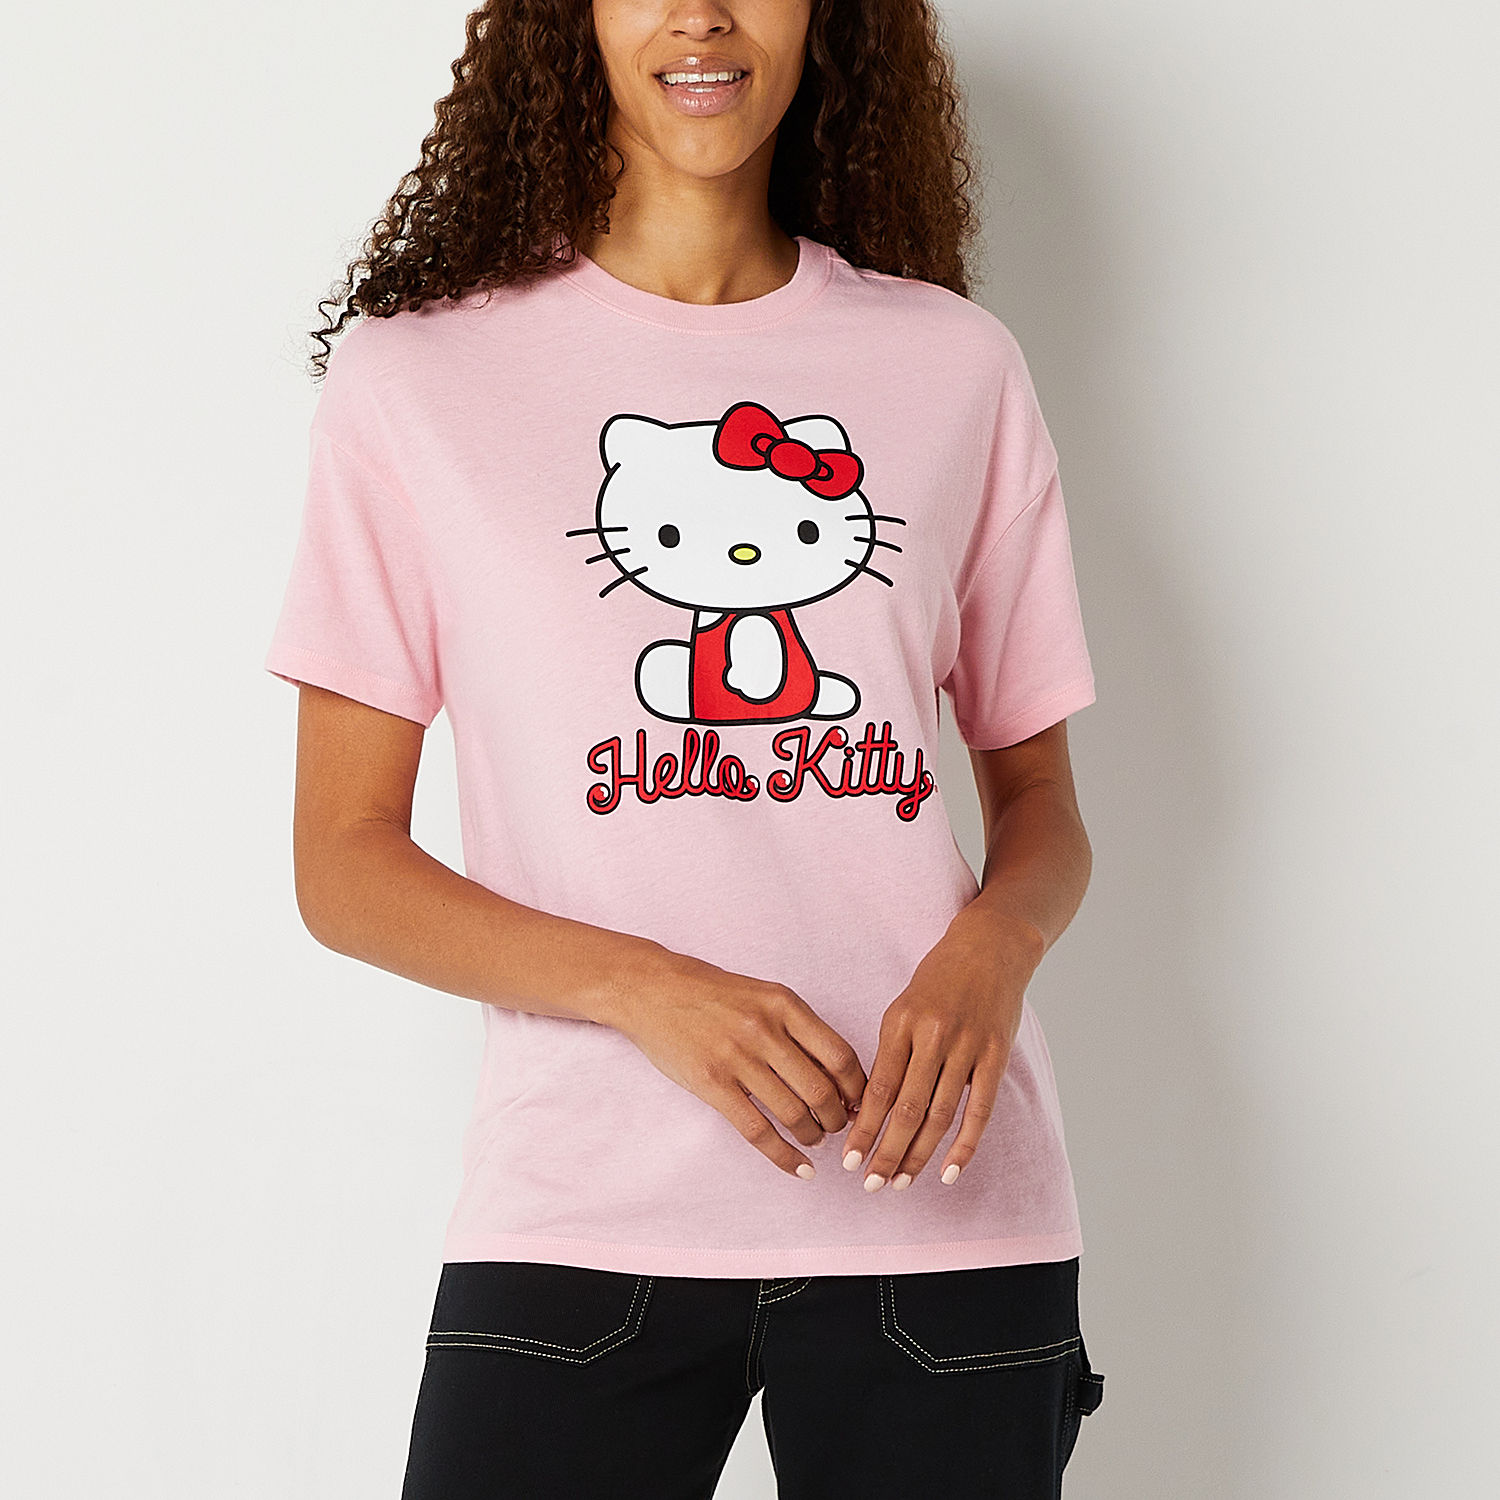 Juniors Boyfriend Tee Womens Crew Neck Short Sleeve Hello Kitty Graphic ...